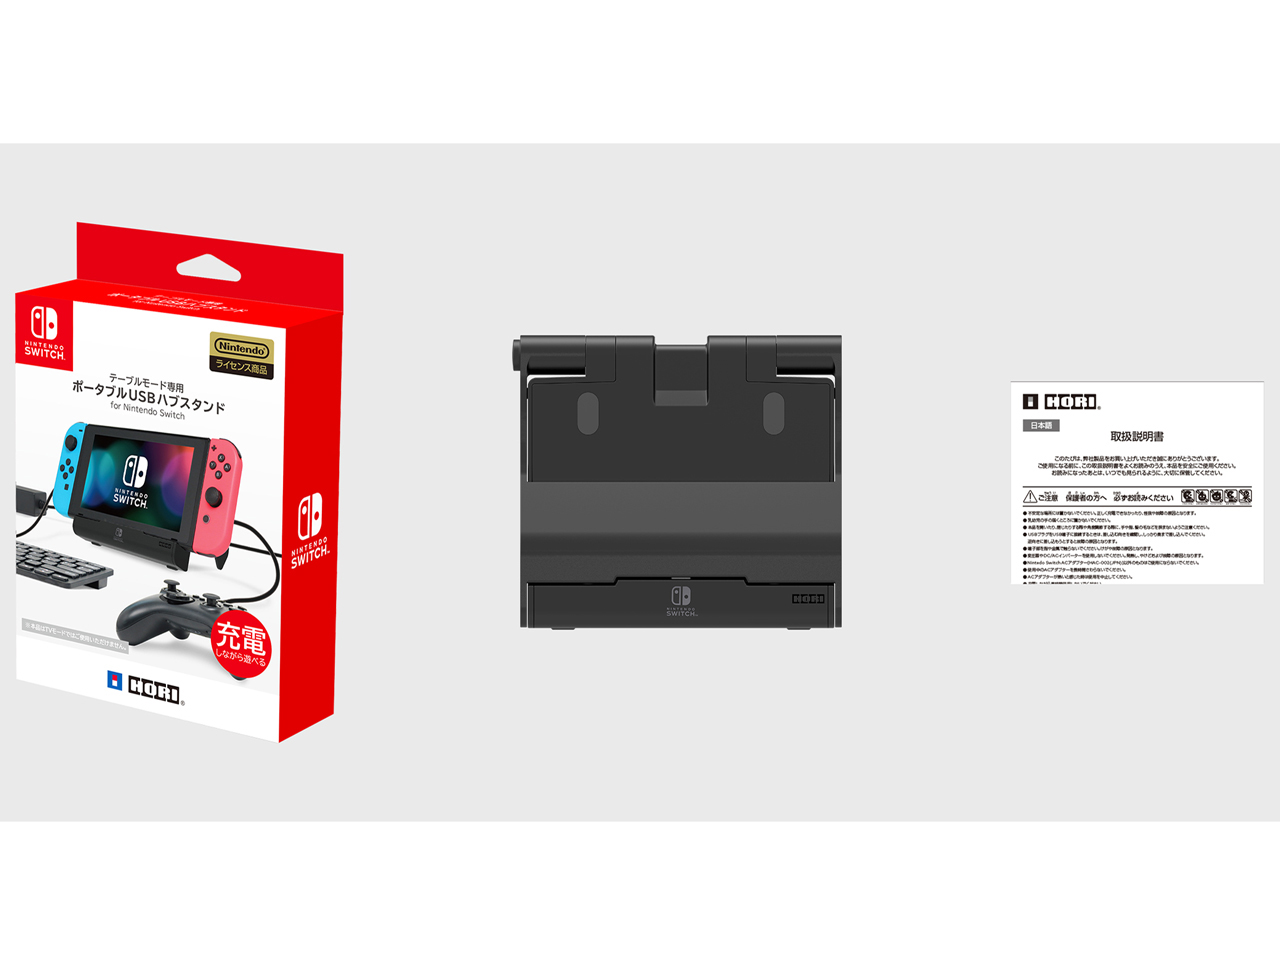 価格 Com セット内容 テーブルモード専用 ポータブルusbハブスタンド For Nintendo Switch Nsw 078 の製品画像